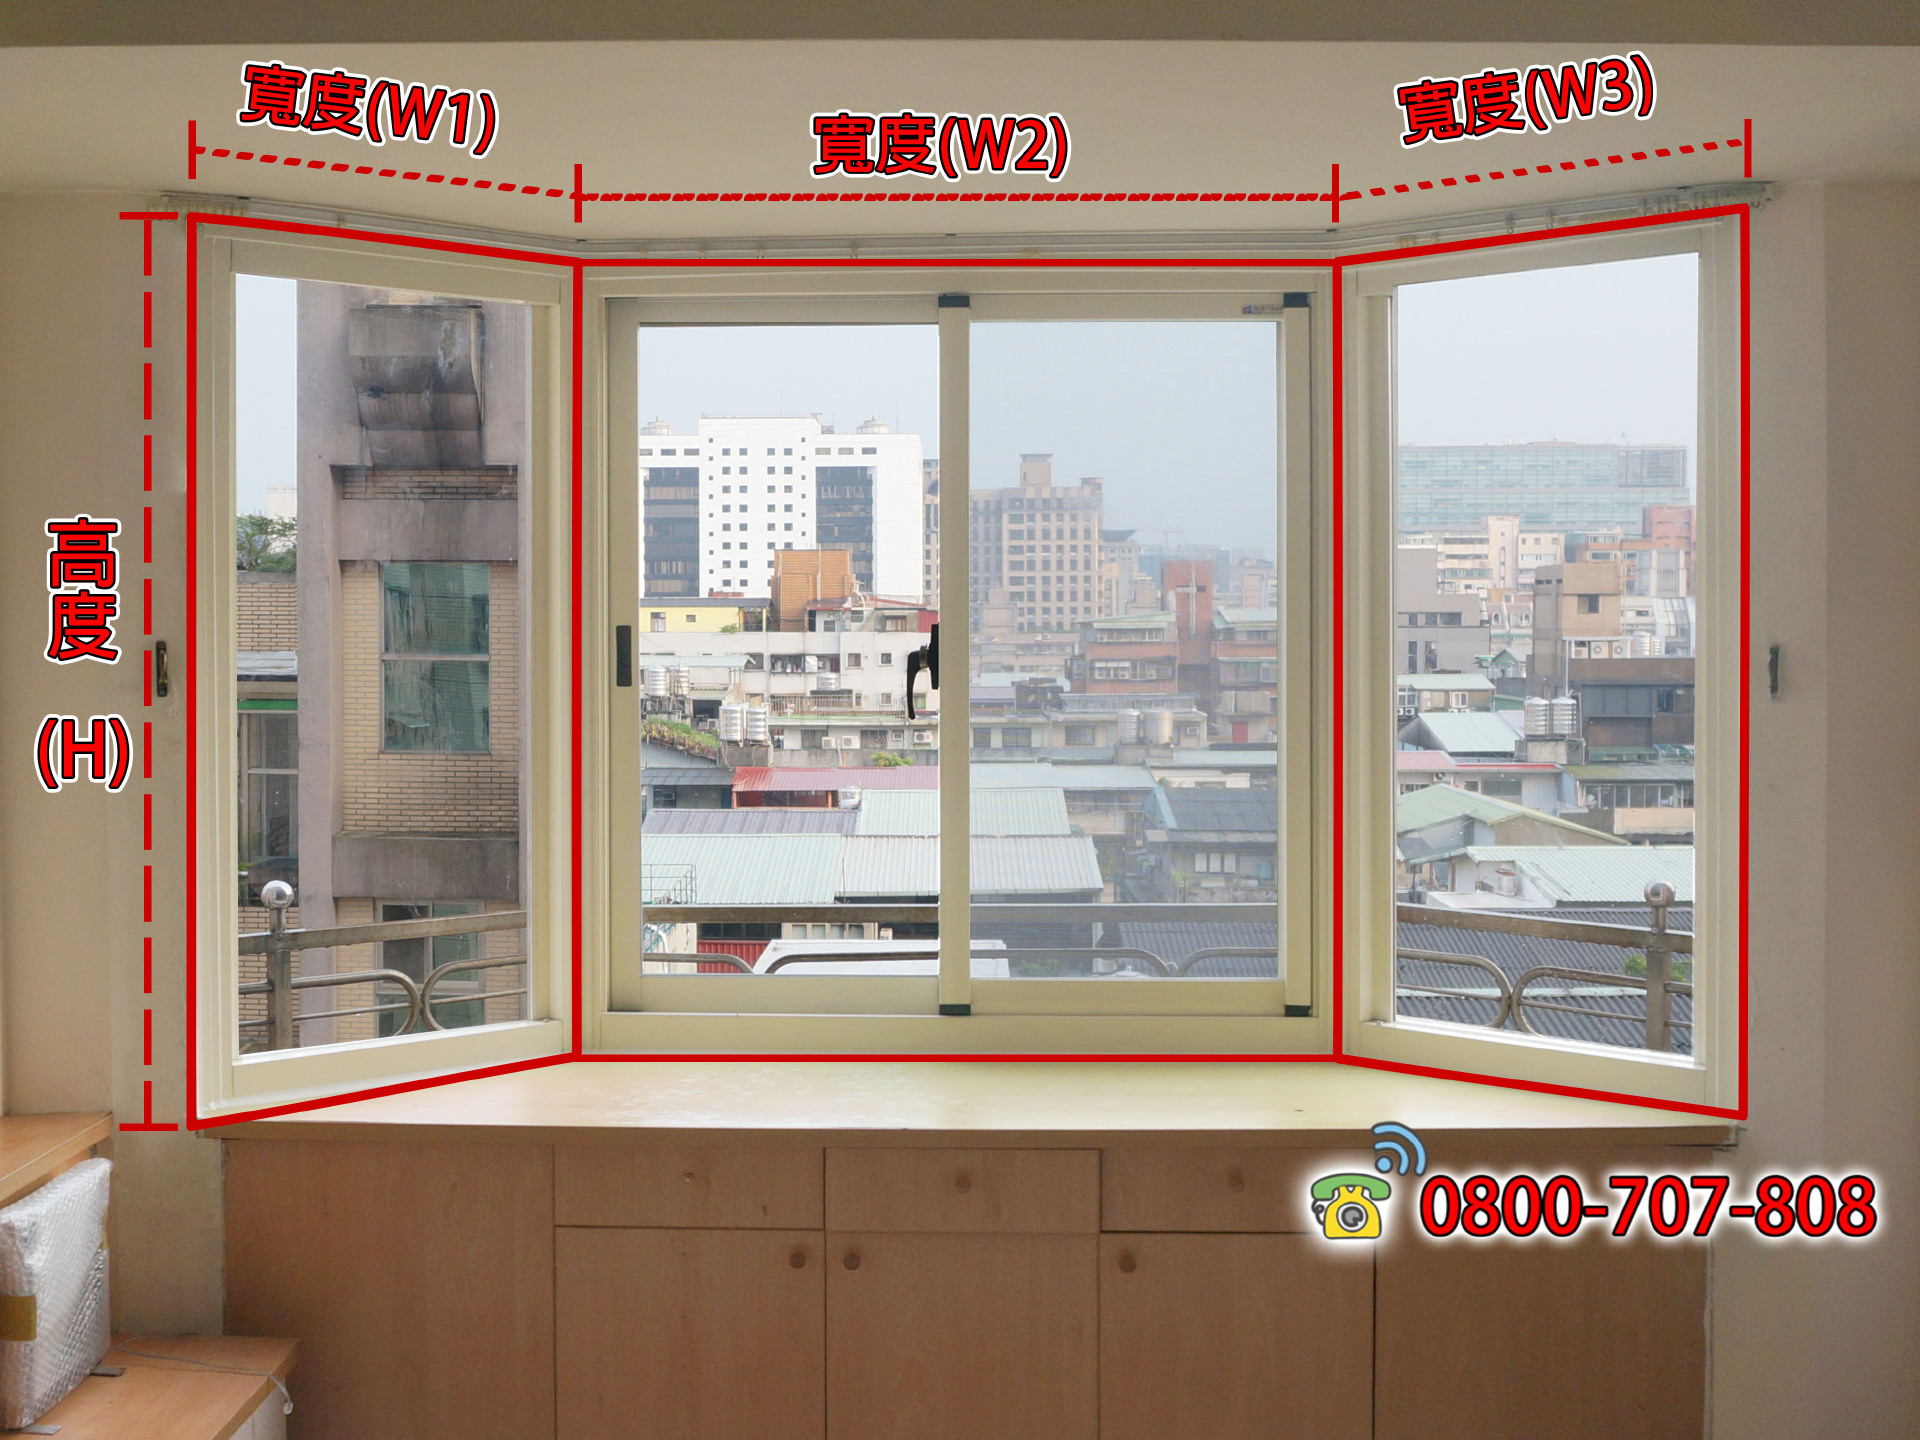 鋁門窗估價、窗戶估價、鋁窗估價、氣密窗估價